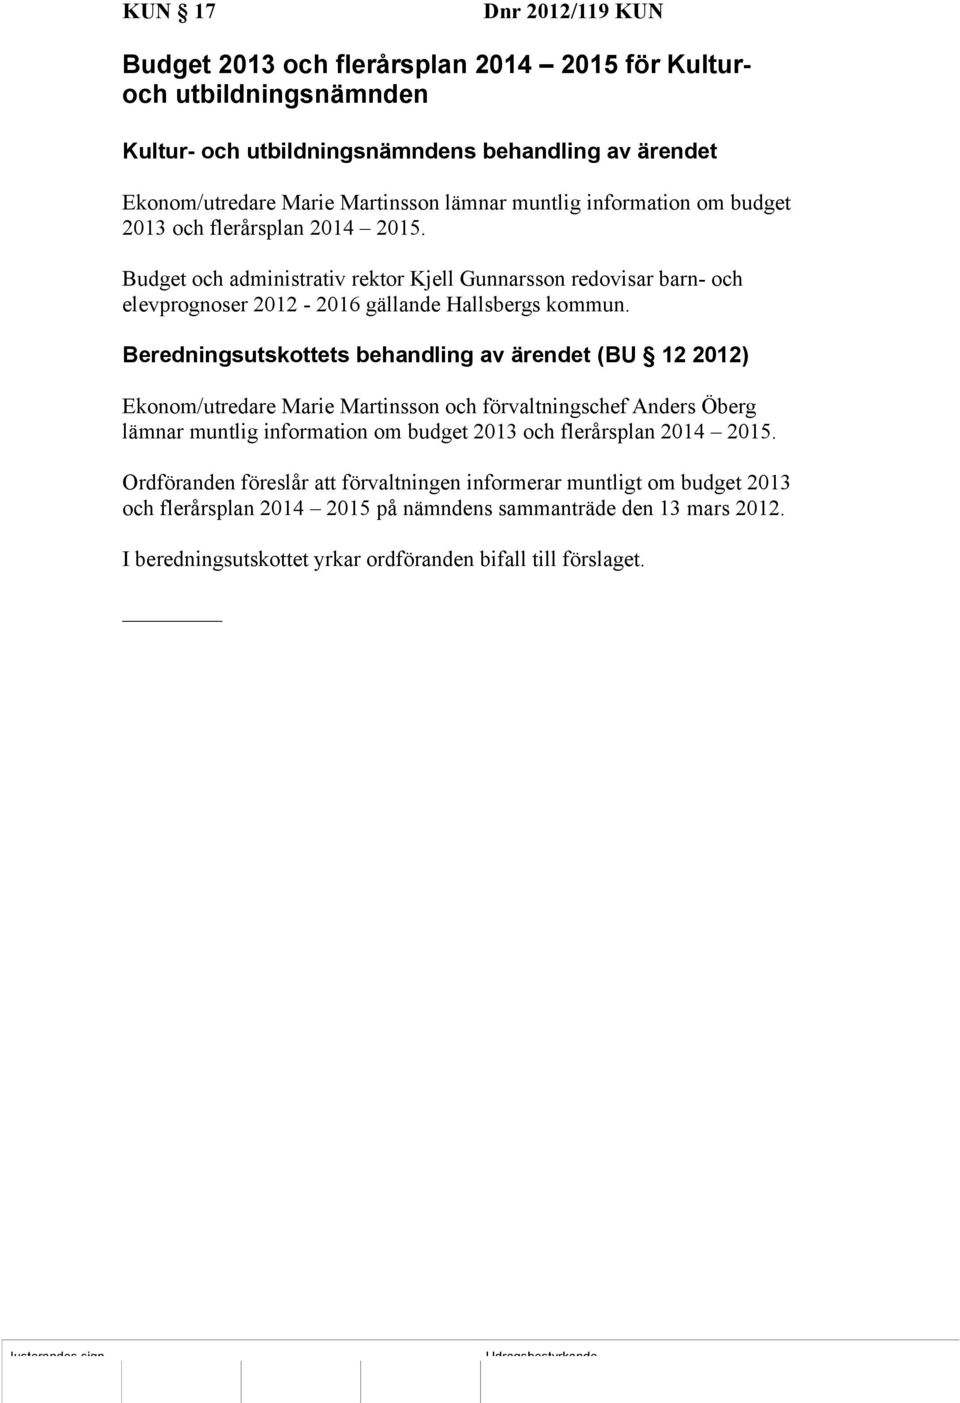 Beredningsutskottets behandling av ärendet (BU 12 2012) Ekonom/utredare Marie Martinsson och förvaltningschef Anders Öberg lämnar muntlig information om budget 2013 och